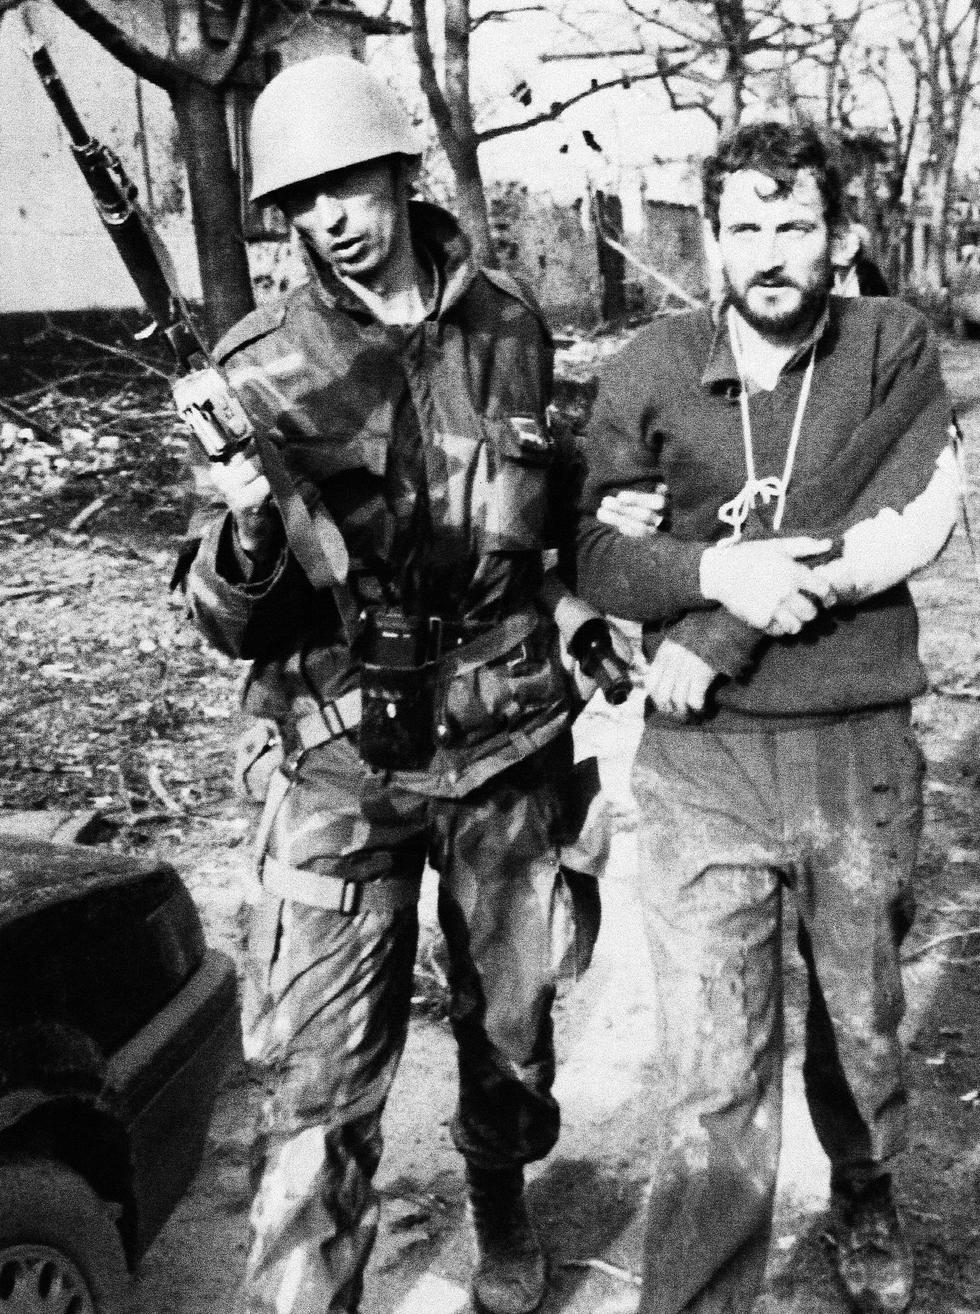 1991. En noviembre de ese año, el ejército serbioyugoslavo sometió a la ciudad croata. Y una de sus primeras acciones fue visitar los hospitales para encontrar a los refugiados serbios. Recuerda la agencia EFE que al menos 300 personas fueron llevadas a una granja en Ovcara, donde fueron golpeadas y asesinadas a tiros. AP